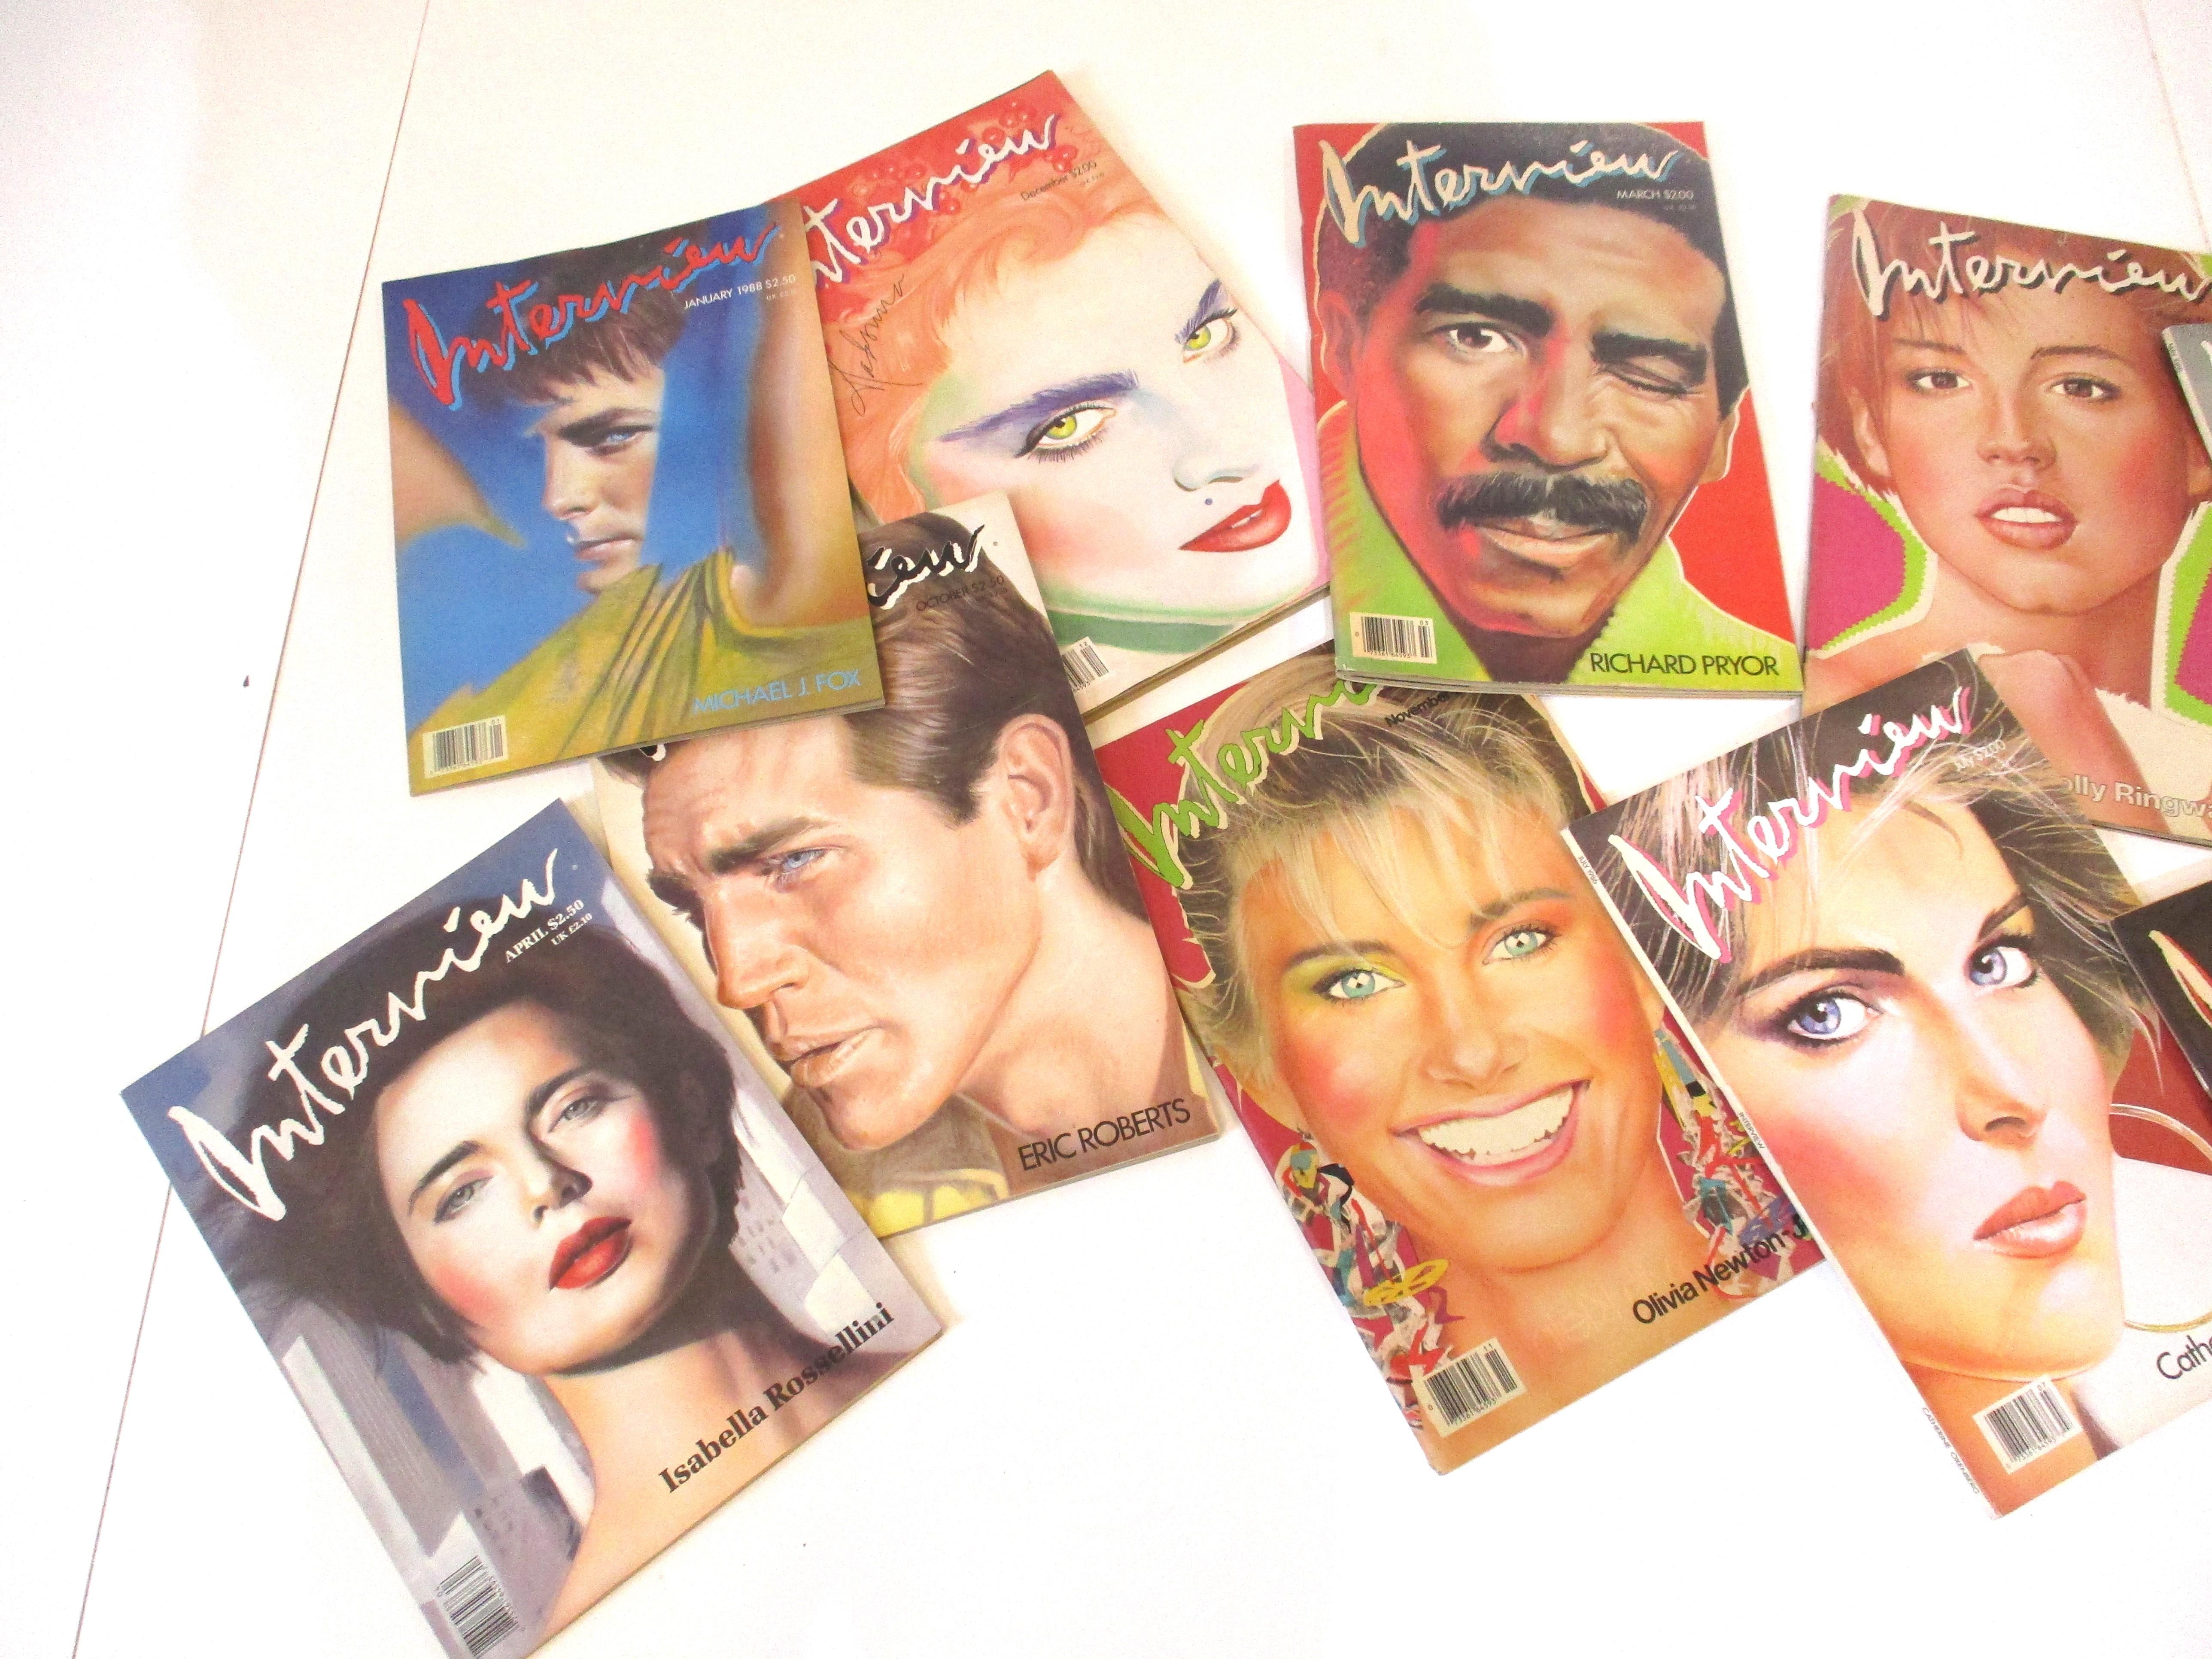 Une collection de treize magazines d'interviews emblématiques publiés par Andy Warhol avec de nombreuses couvertures de portraits de l'artiste Richard Bernstein. Ces pièces sont une histoire de l'art, de la mode, de la photographie et des histoires